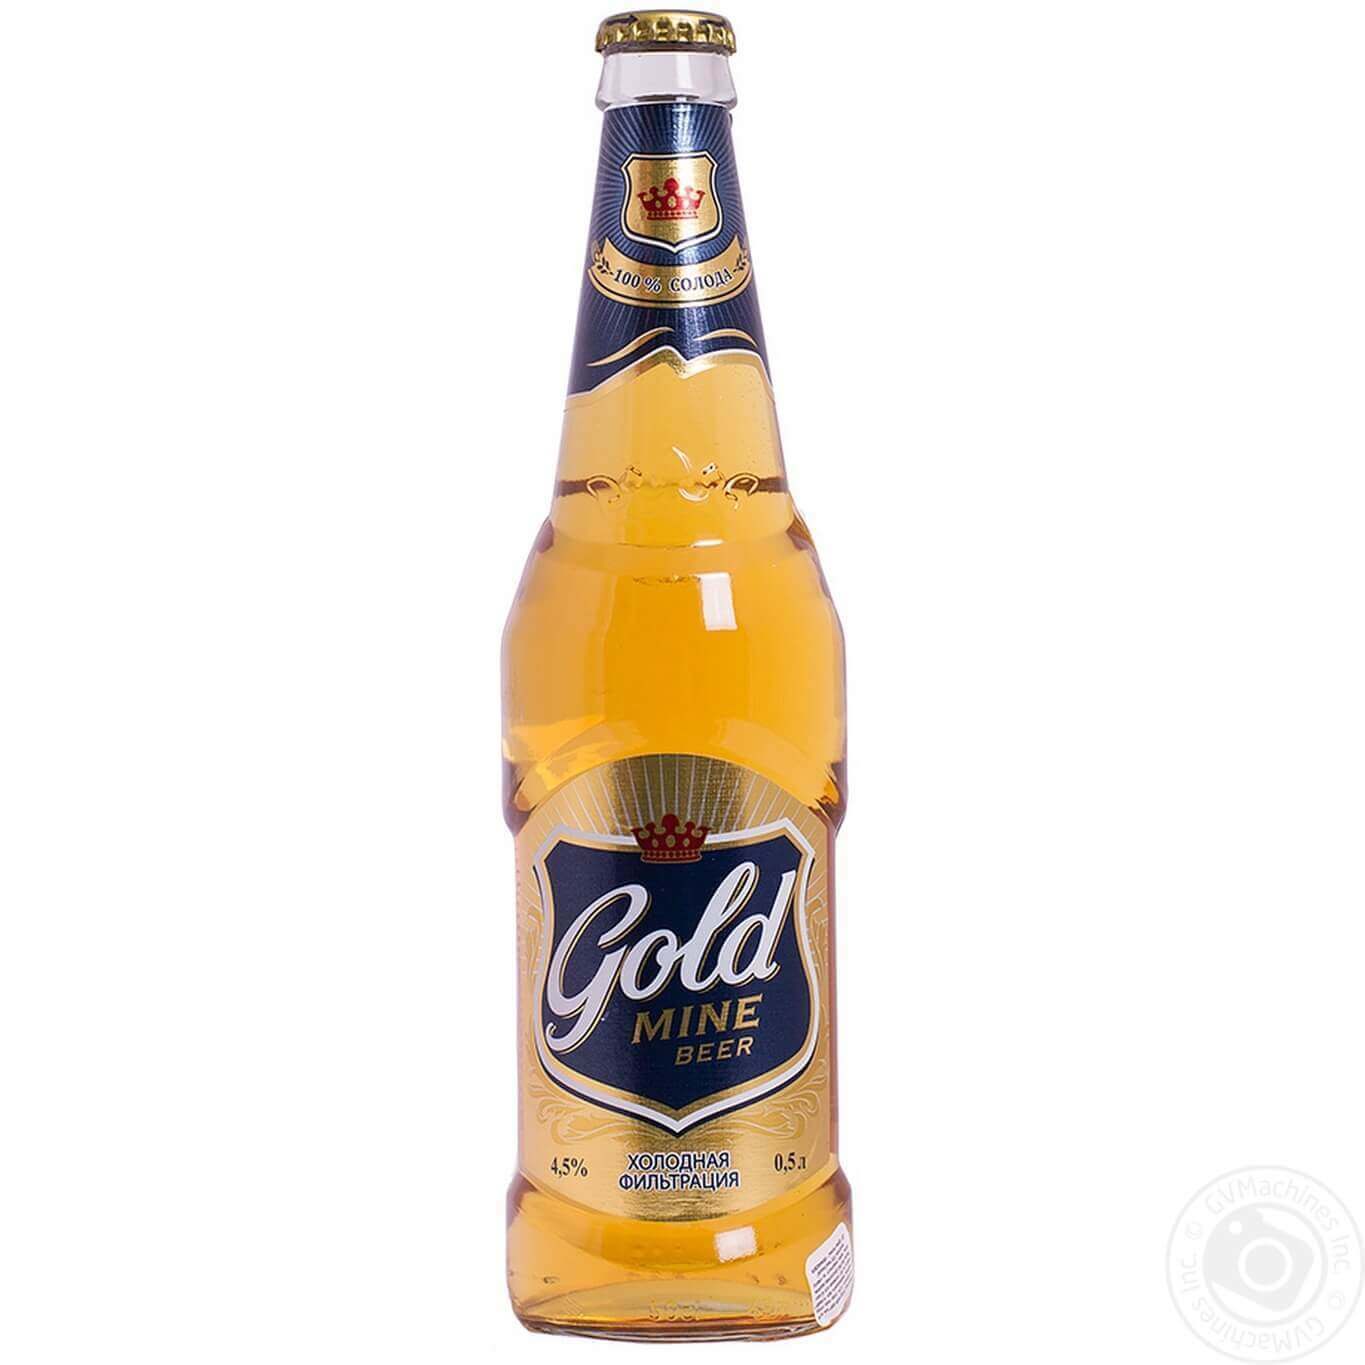 Gold beer. Пиво Голд майн бир в стекле. Пиво Efes Gold. Пиво Голд бир 0.5. Магнит пиво Gold mine Beer.